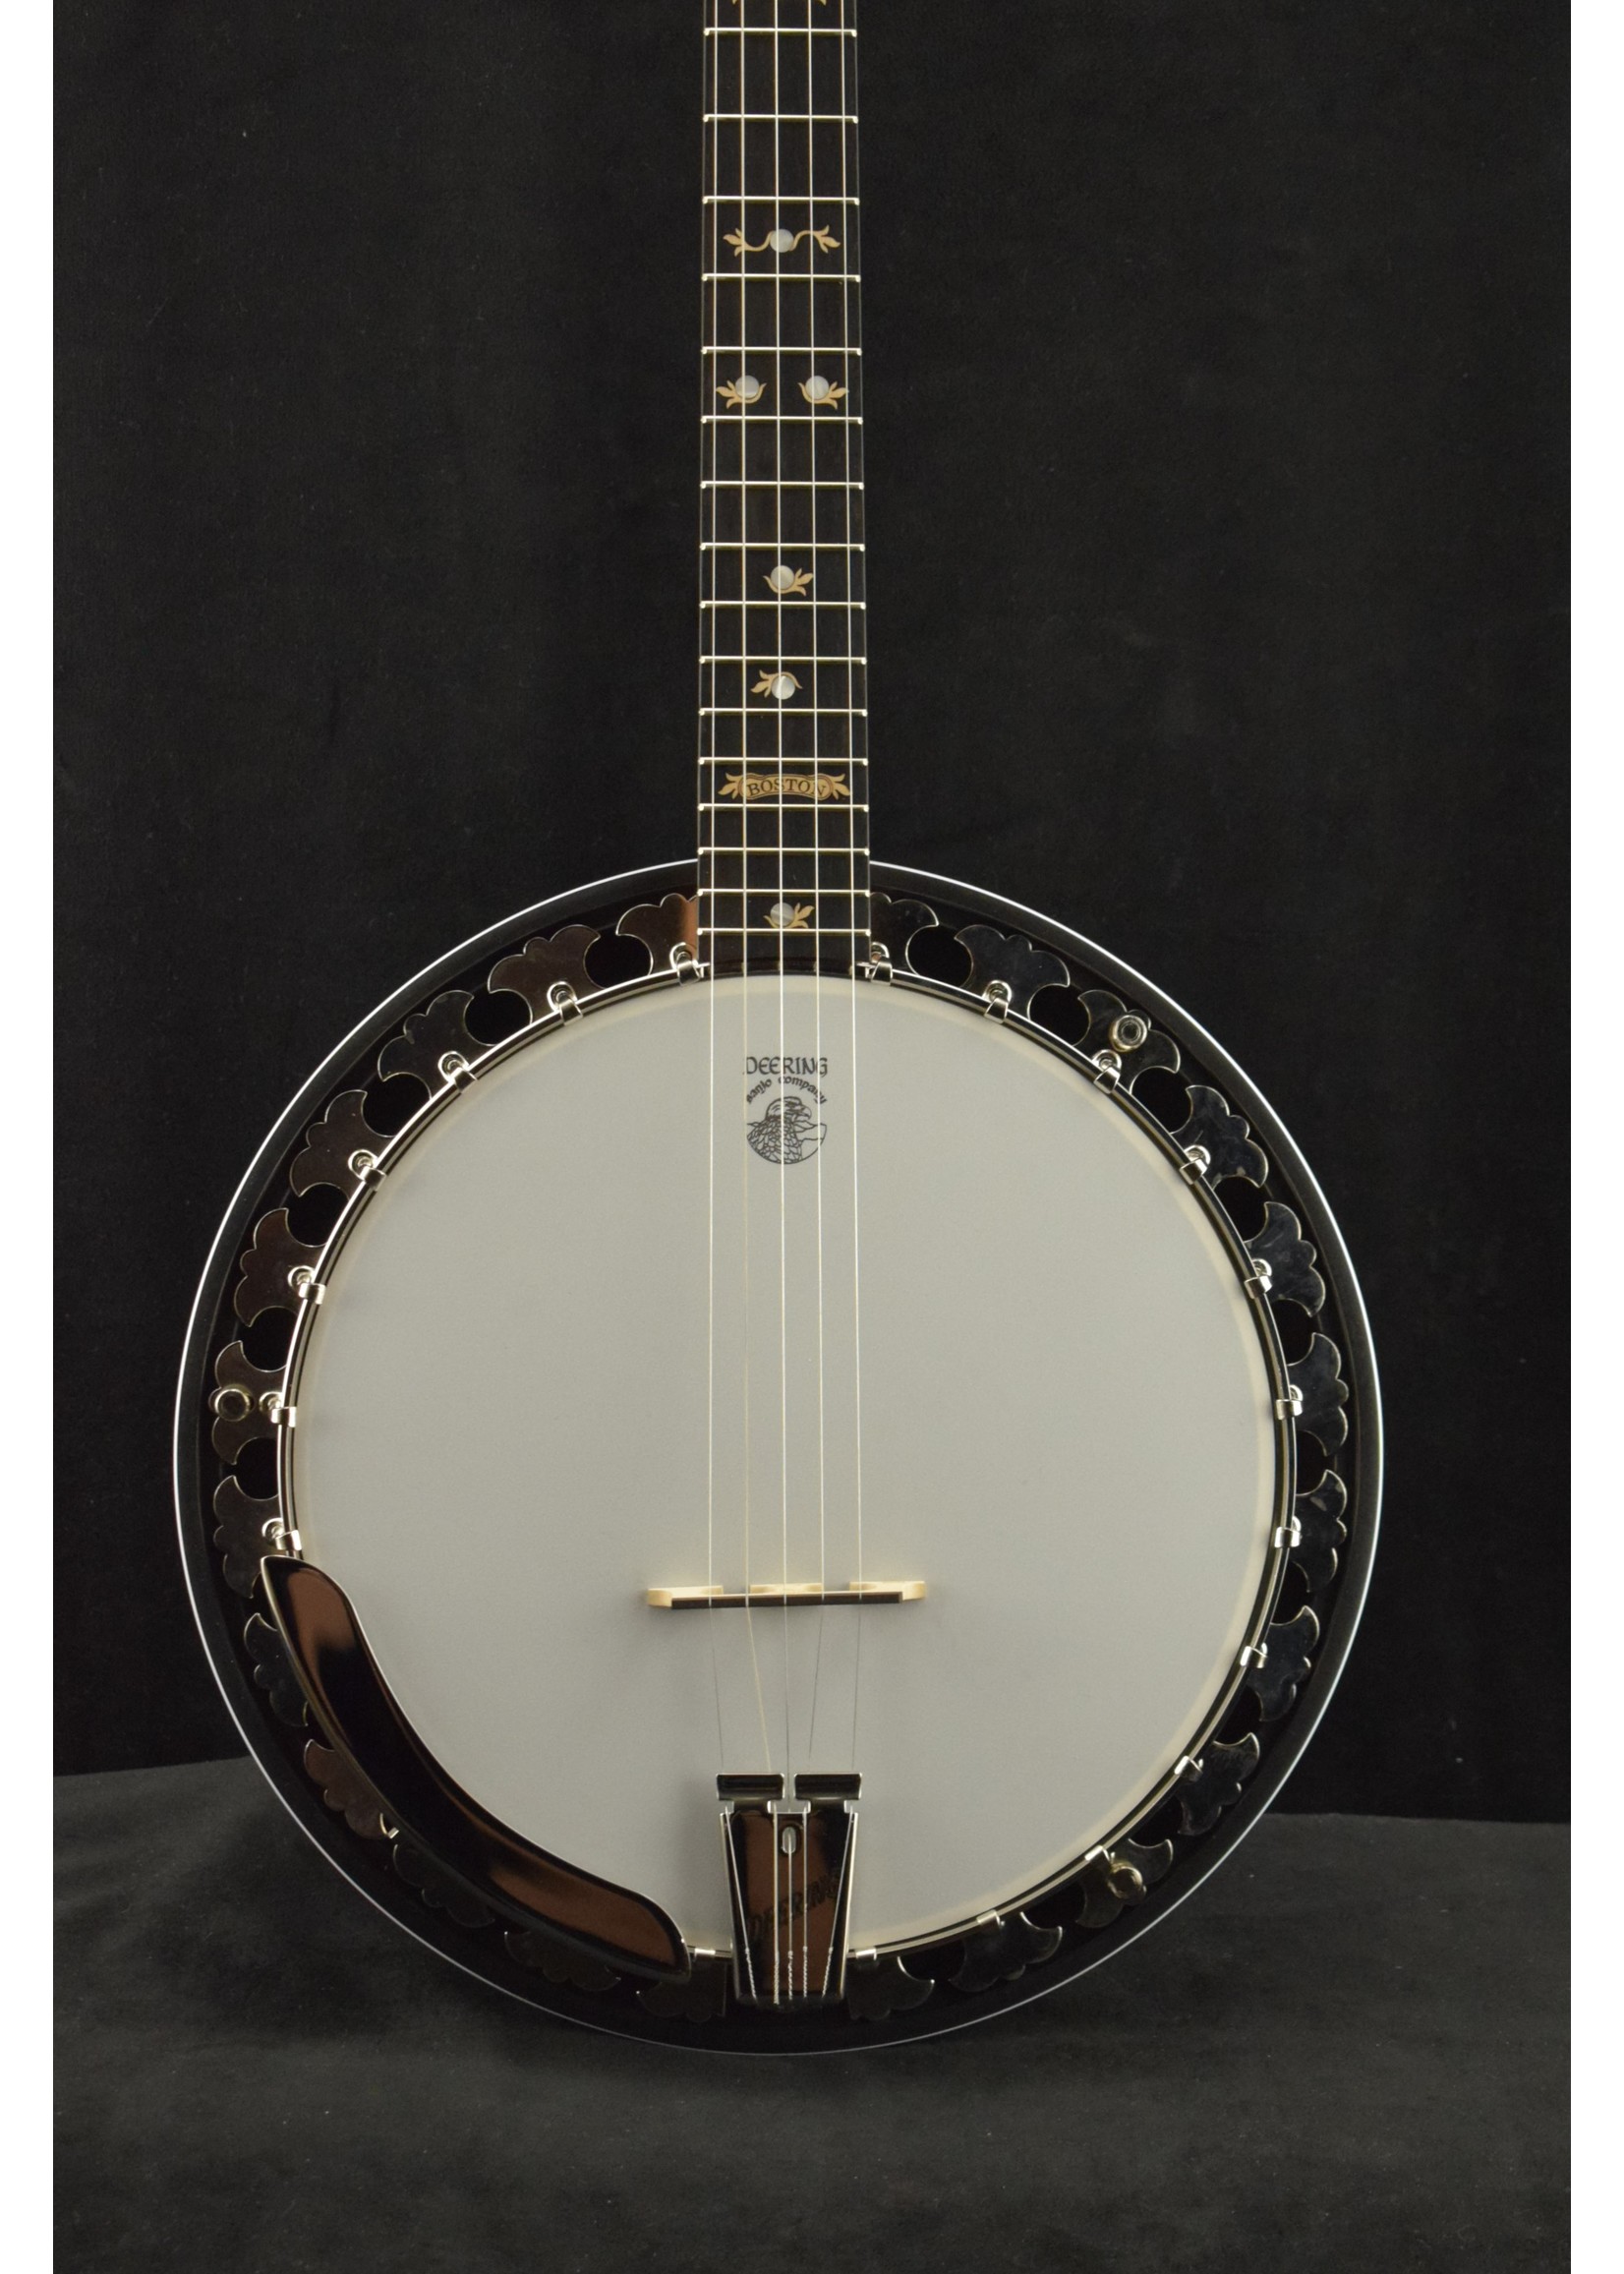 deering banjos for sale